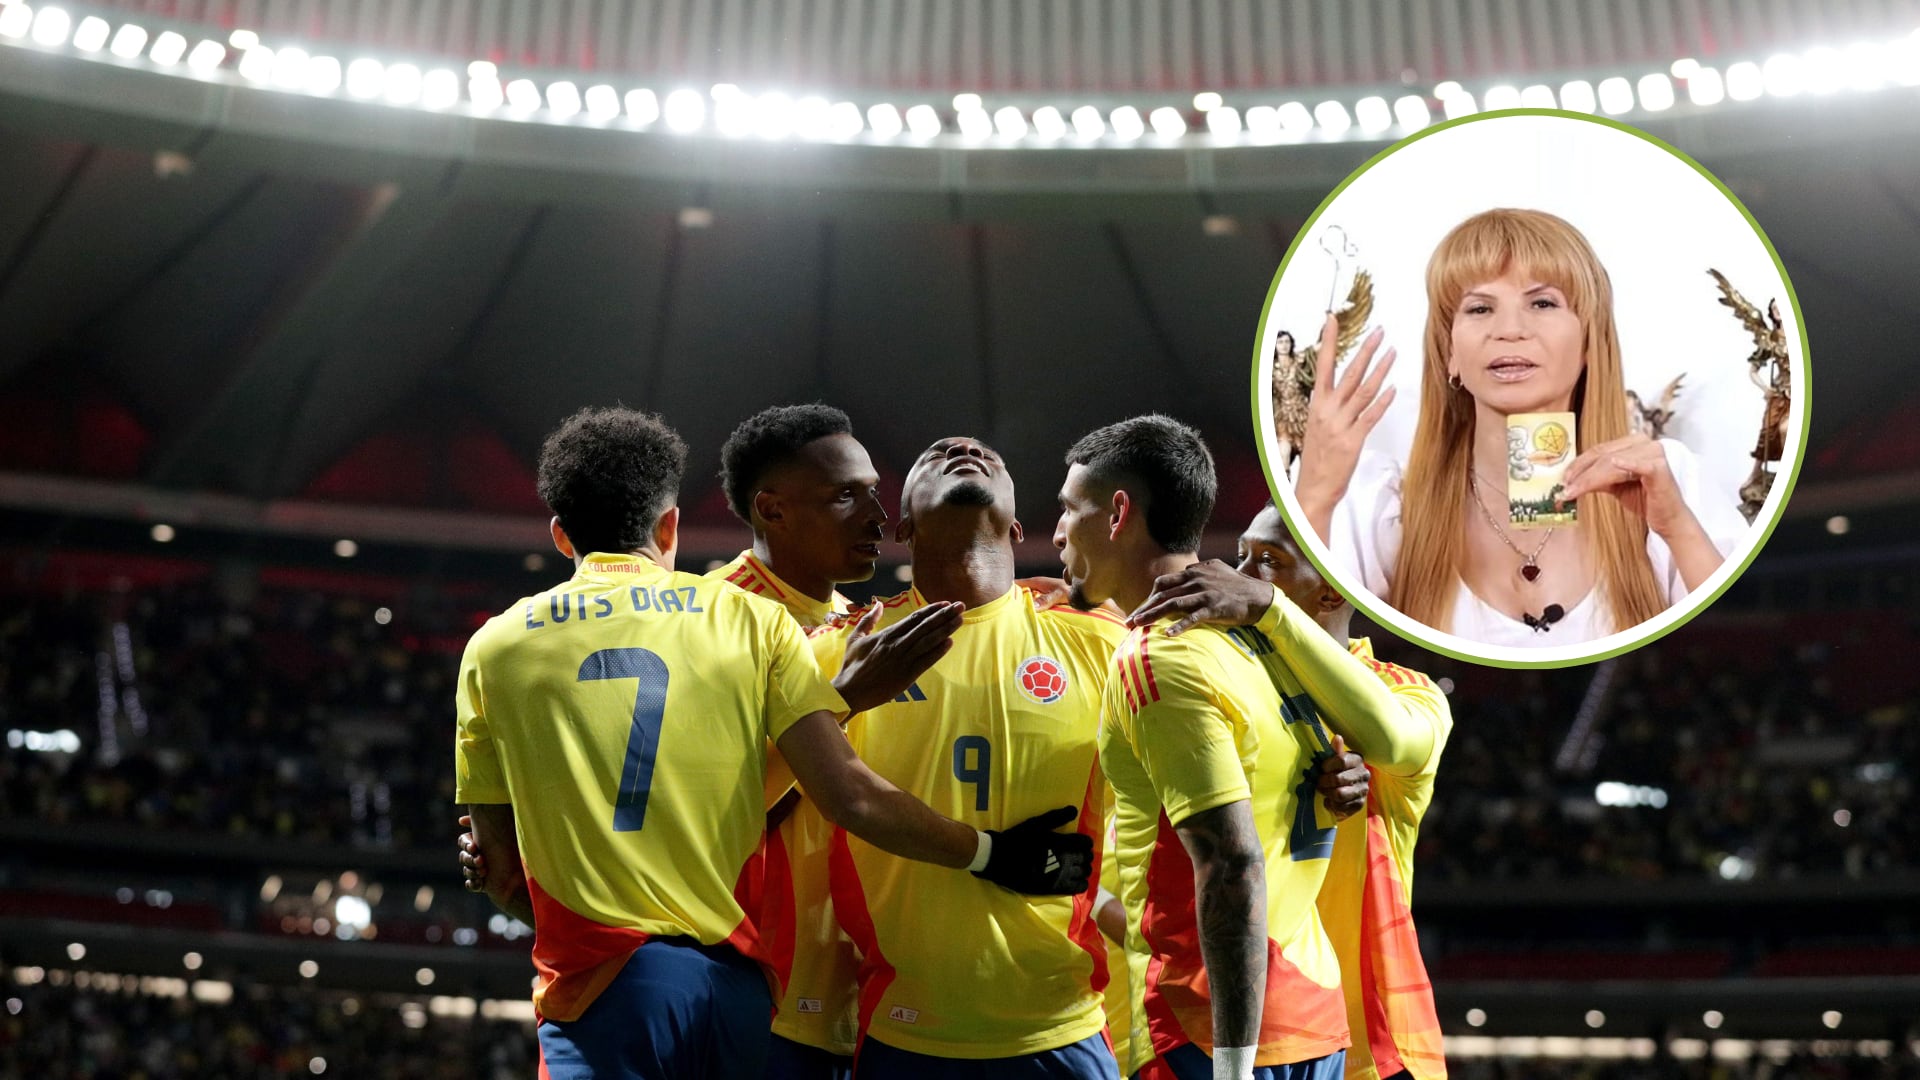 Mhoni Vidente se atrevió a predecir el resultado del partido Colombia Vs Brasil: el partido se definiría en el último minuto